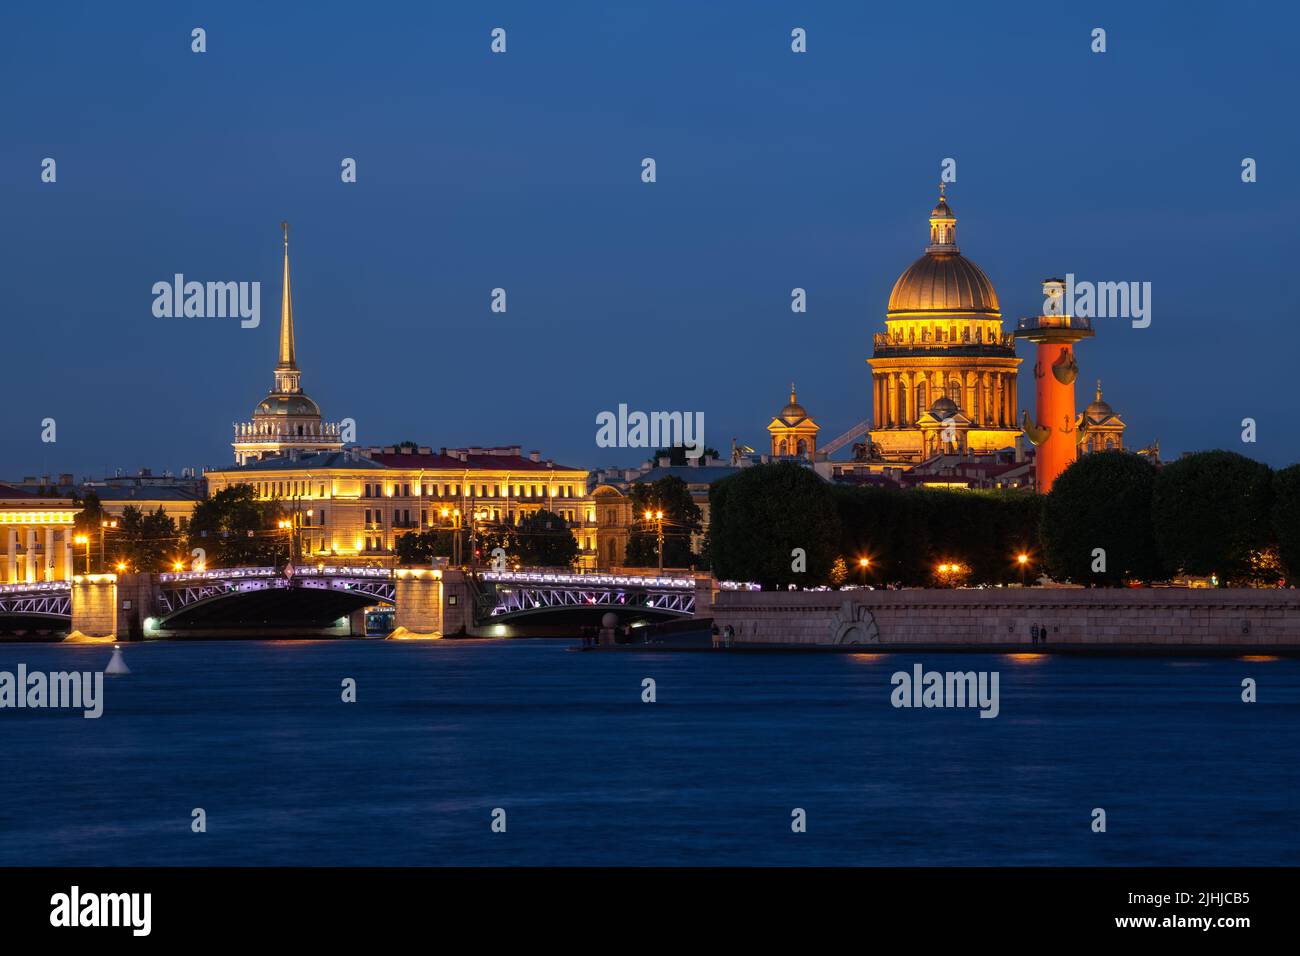 Noche blanca de verano en San Petersburgo. Vista del puente del palacio iluminado, la catedral de San Isaac y la aguja del almirantazgo Foto de stock